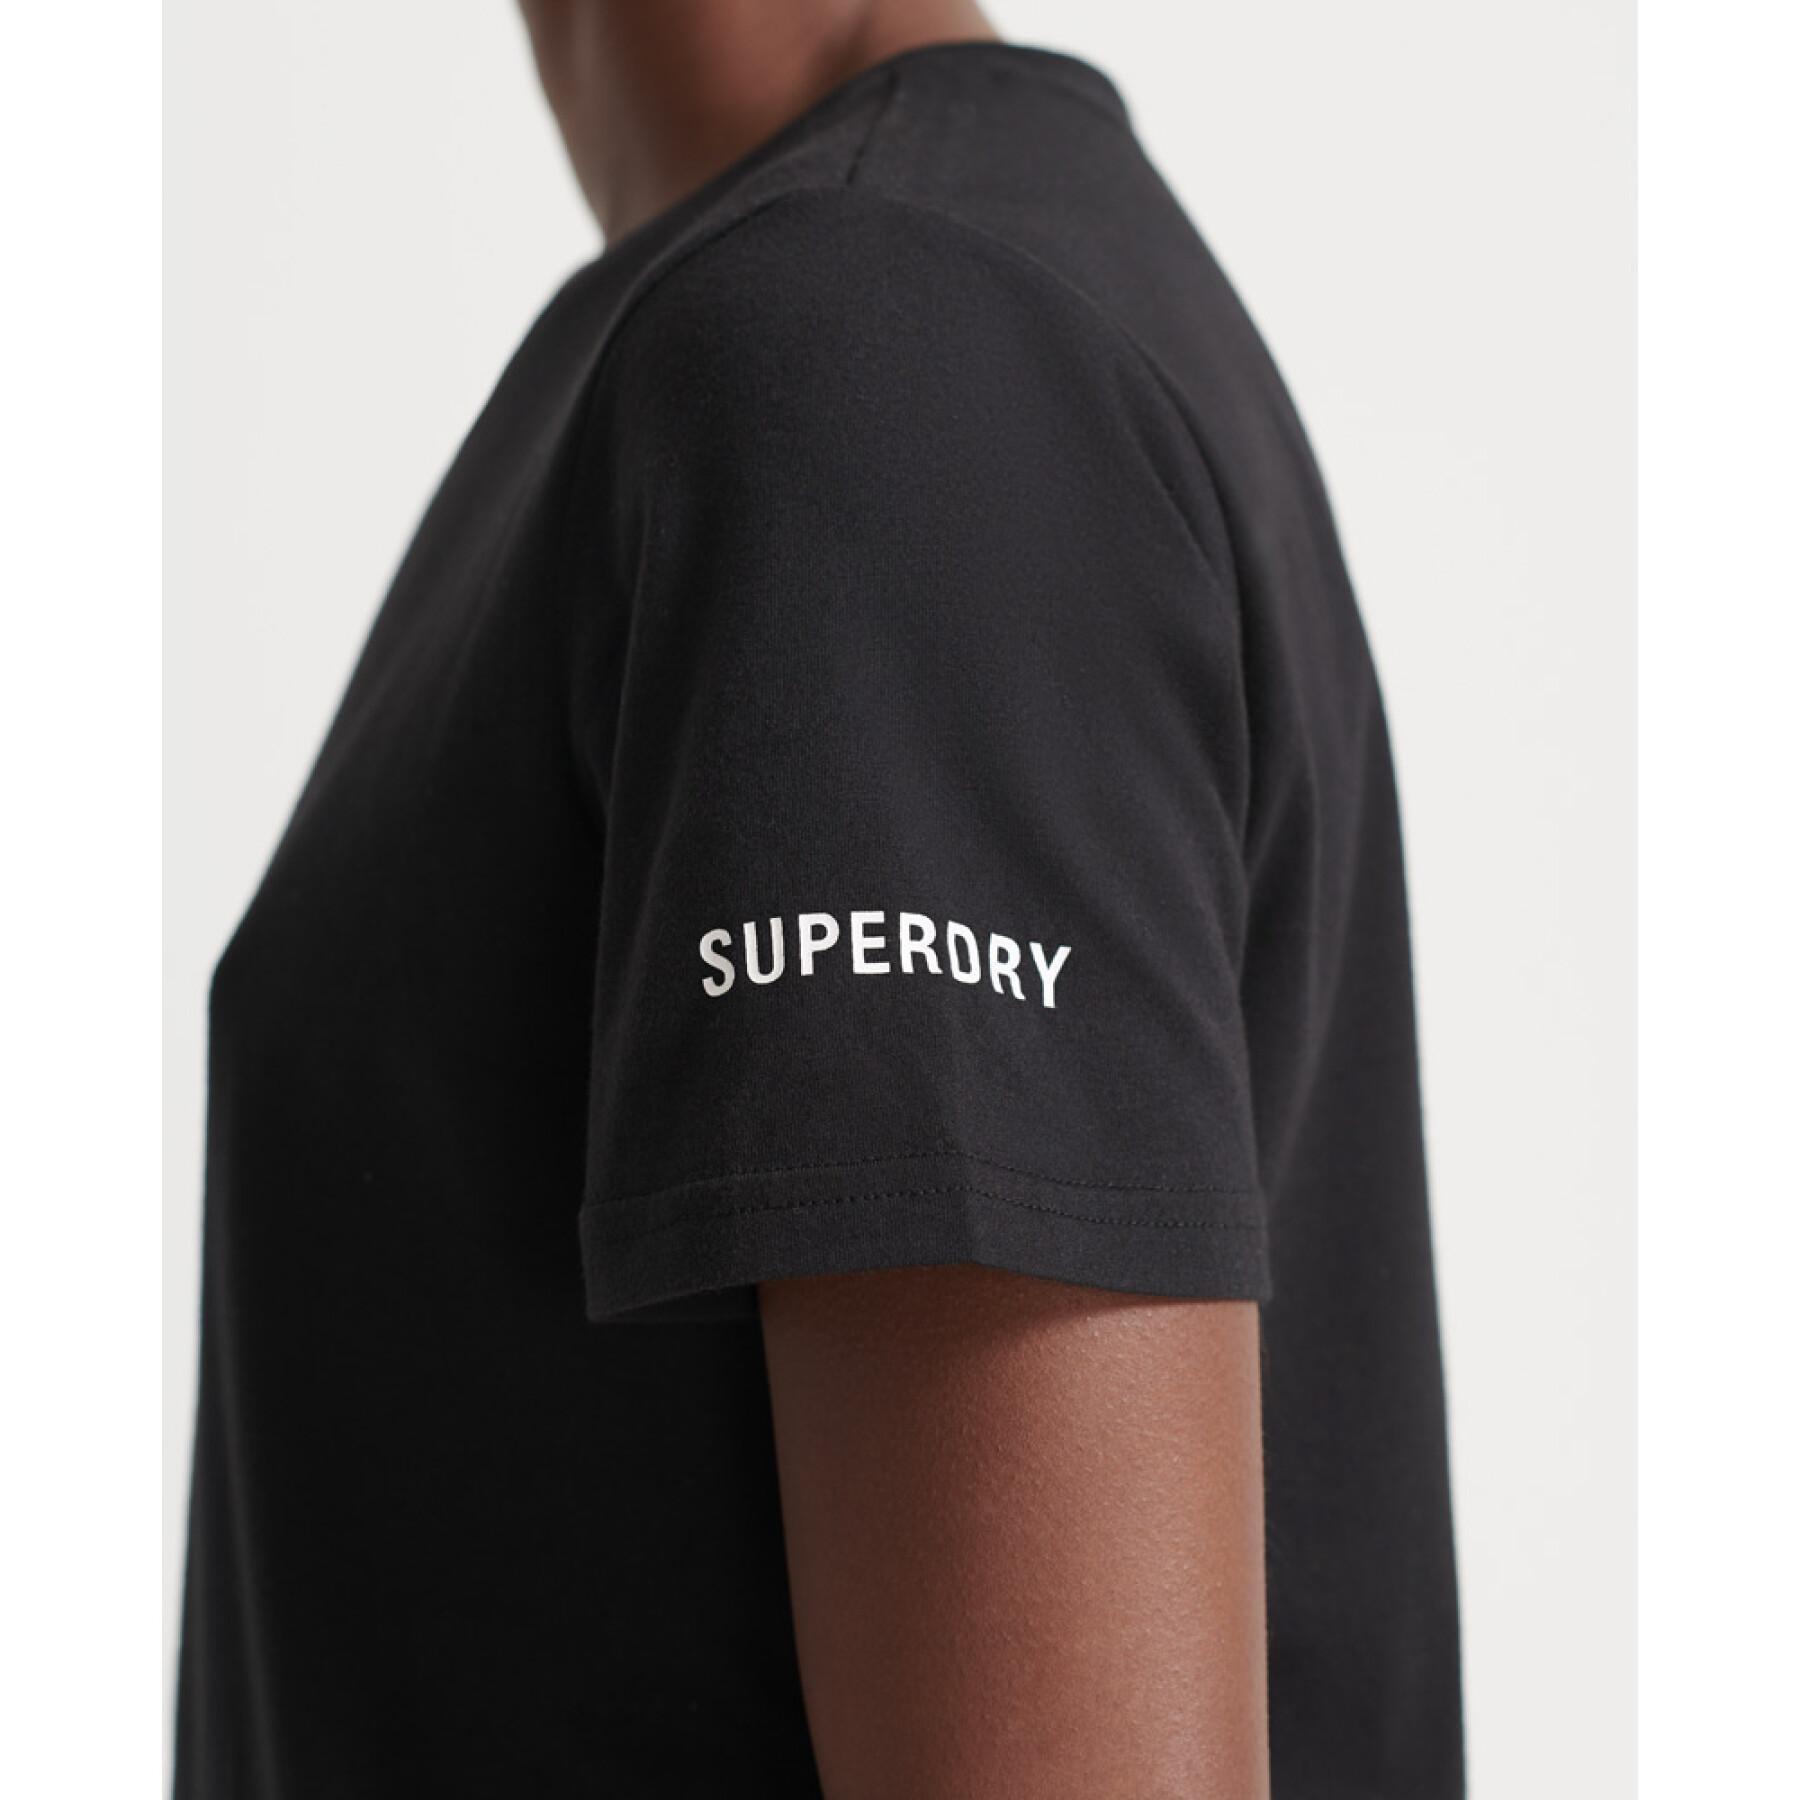 Camiseta feminina Superdry Train Core